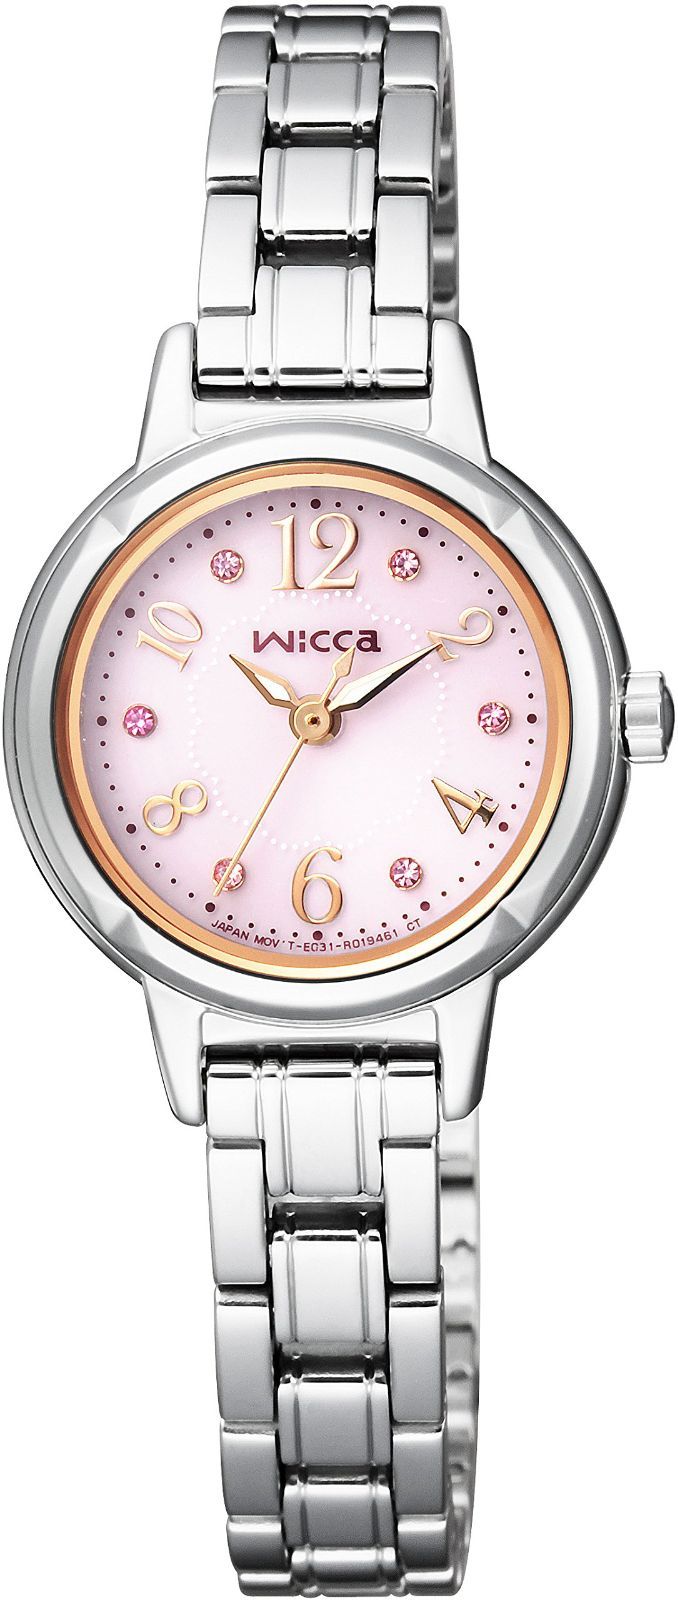 ファッション小物CITIZEN 腕時計 wicca ウィッカ ソーラーテック スワロフスキー